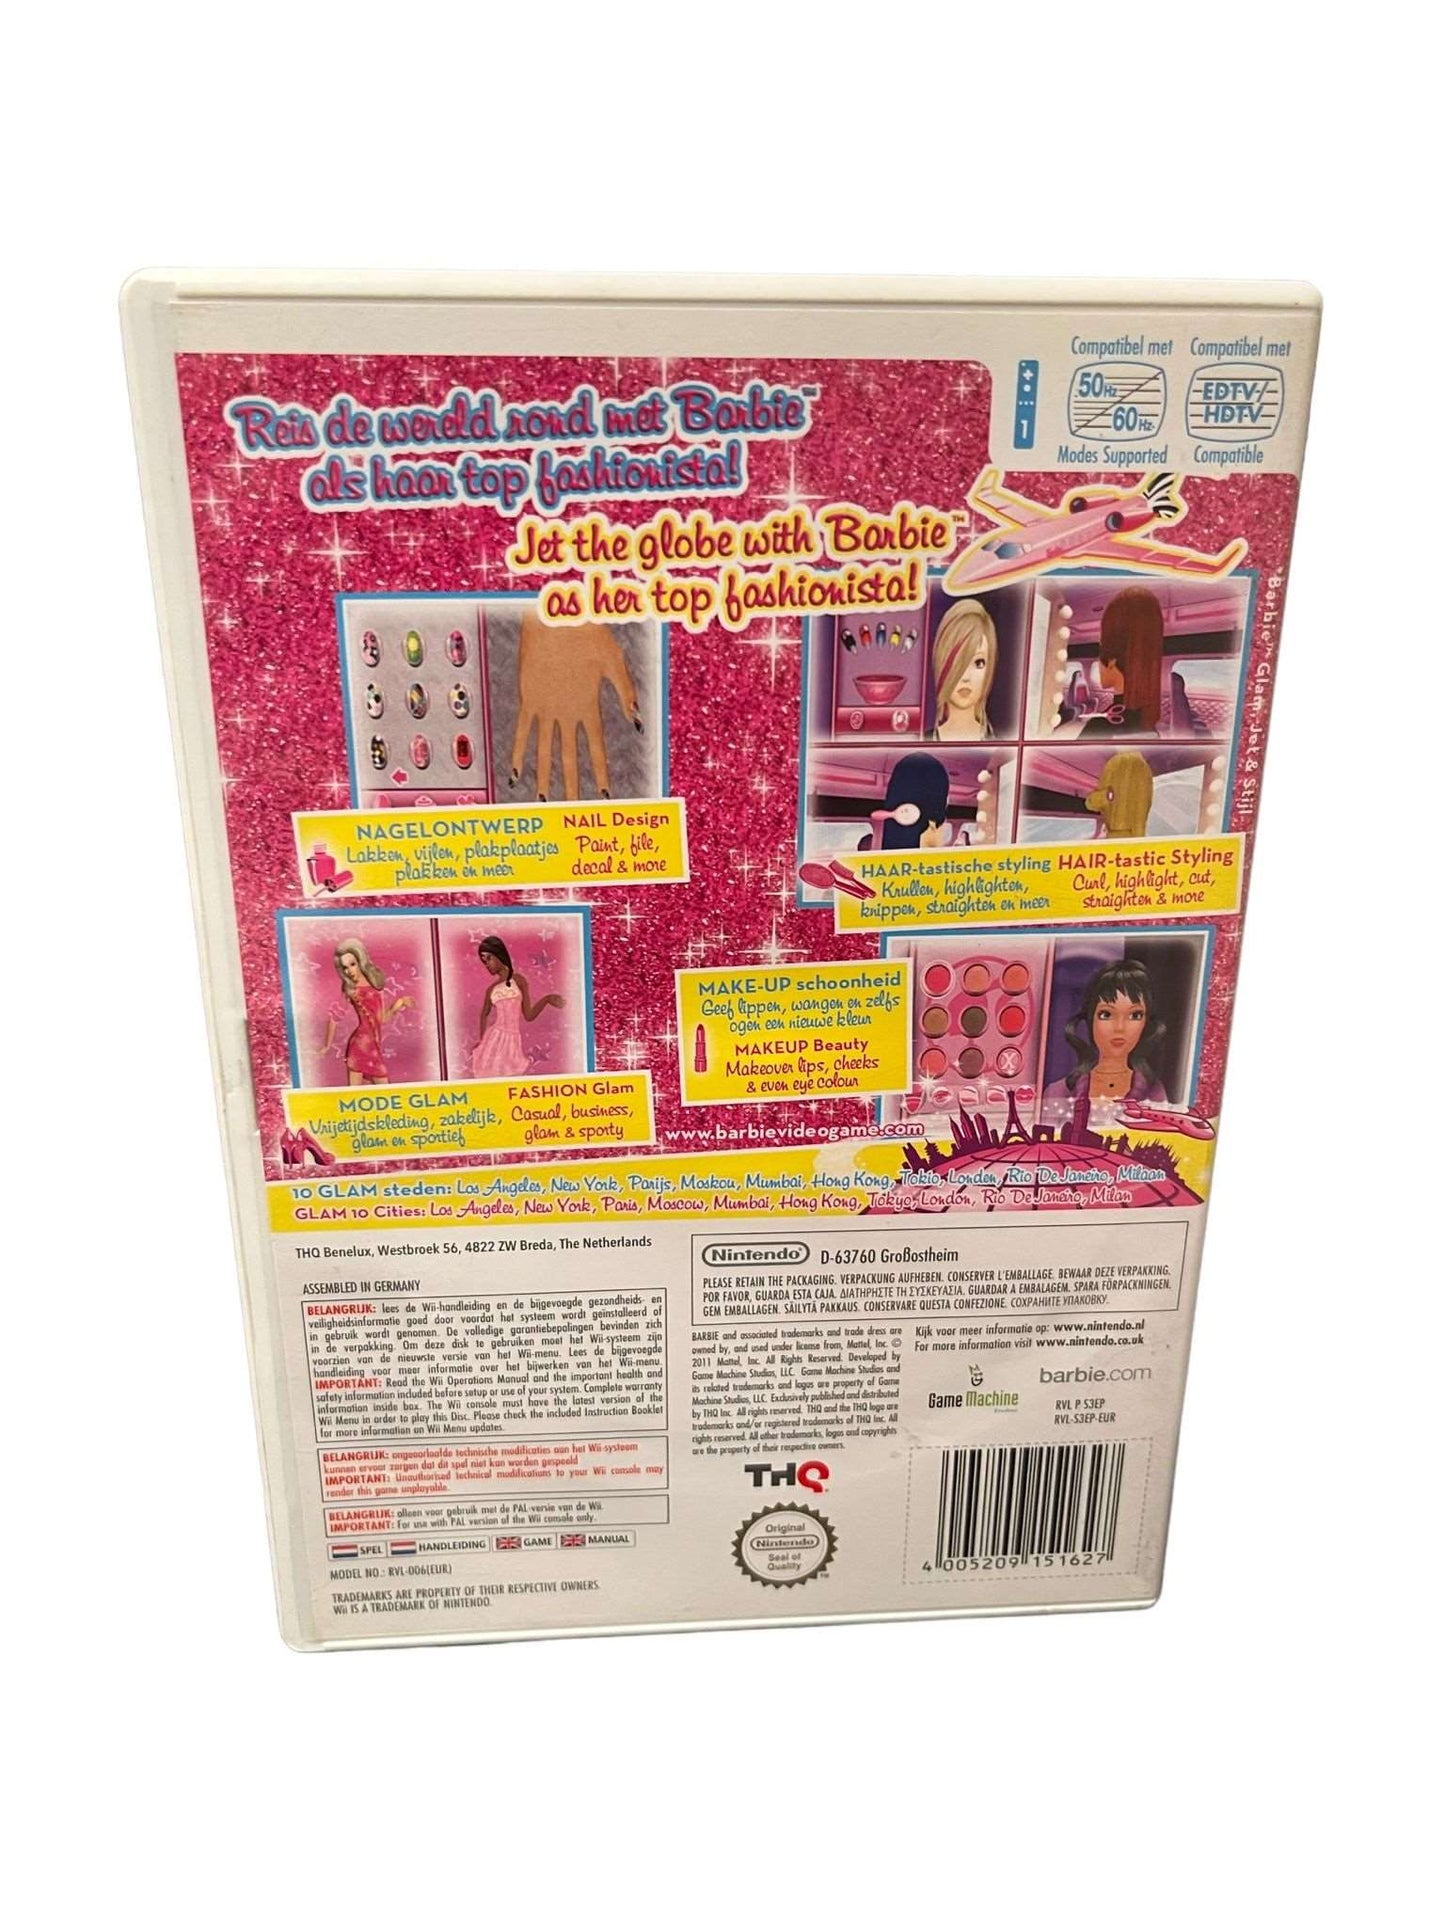 Barbie Jet, Set & Style! - Wii